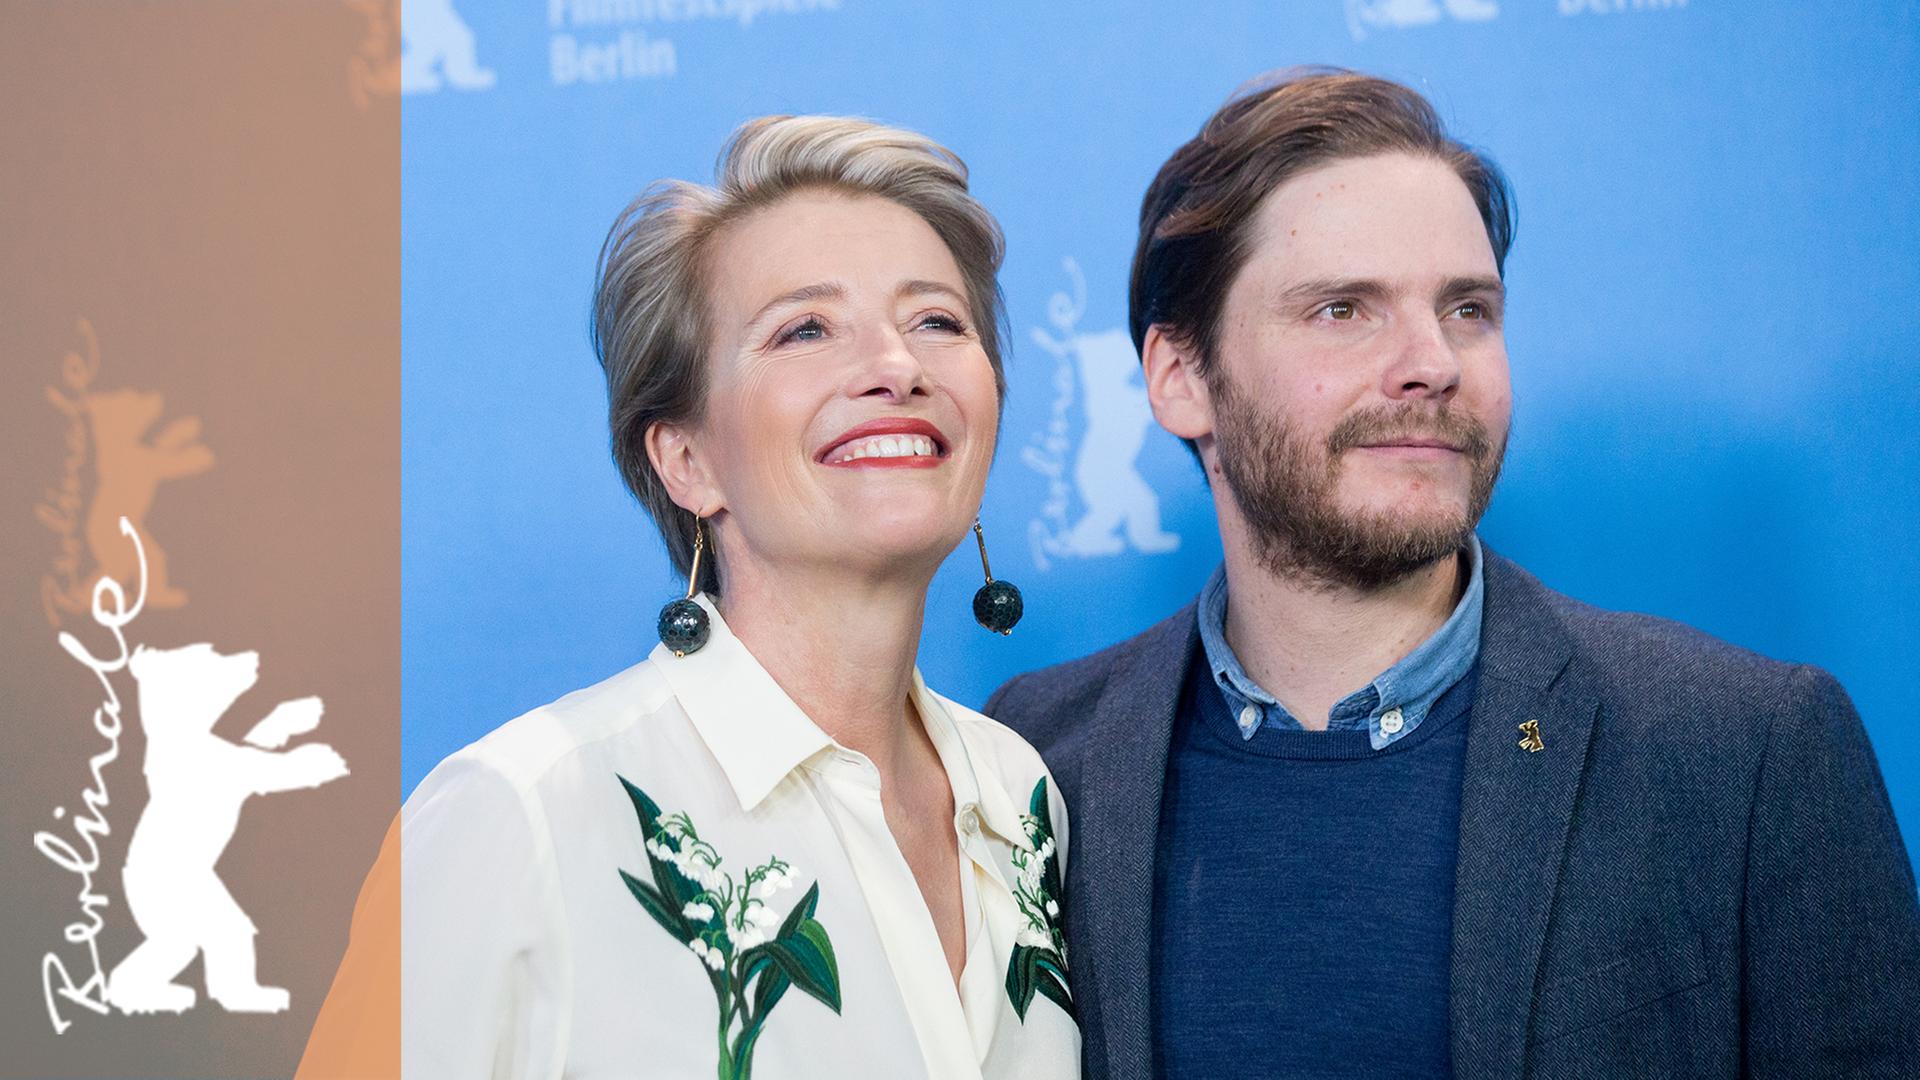 Emma Thompson und Daniel Brühl auf den 66. Internationalen Filmfestspielen Berlin. Sie spielen im Film "Jeder stirbt für sich allein" ("Alone in Berlin"). Die Verfilmung von Hans Falladas Roman wurde im Wettbewerb der Berlinale 2015 gezeigt.